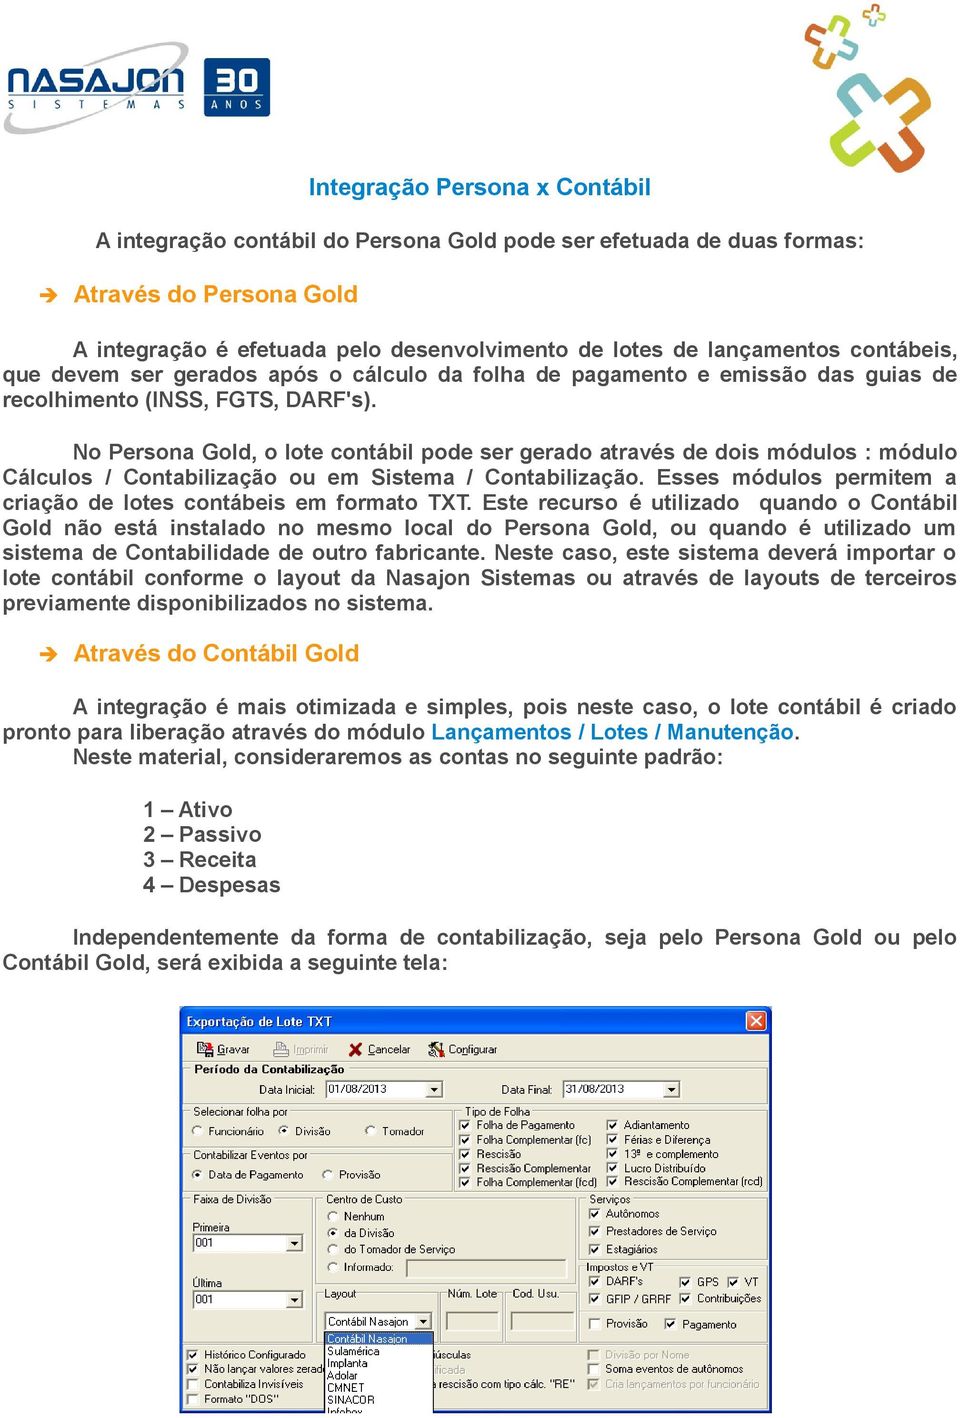 No Persona Gold, o lote contábil pode ser gerado através de dois módulos : módulo Cálculos / Contabilização ou em Sistema / Contabilização.